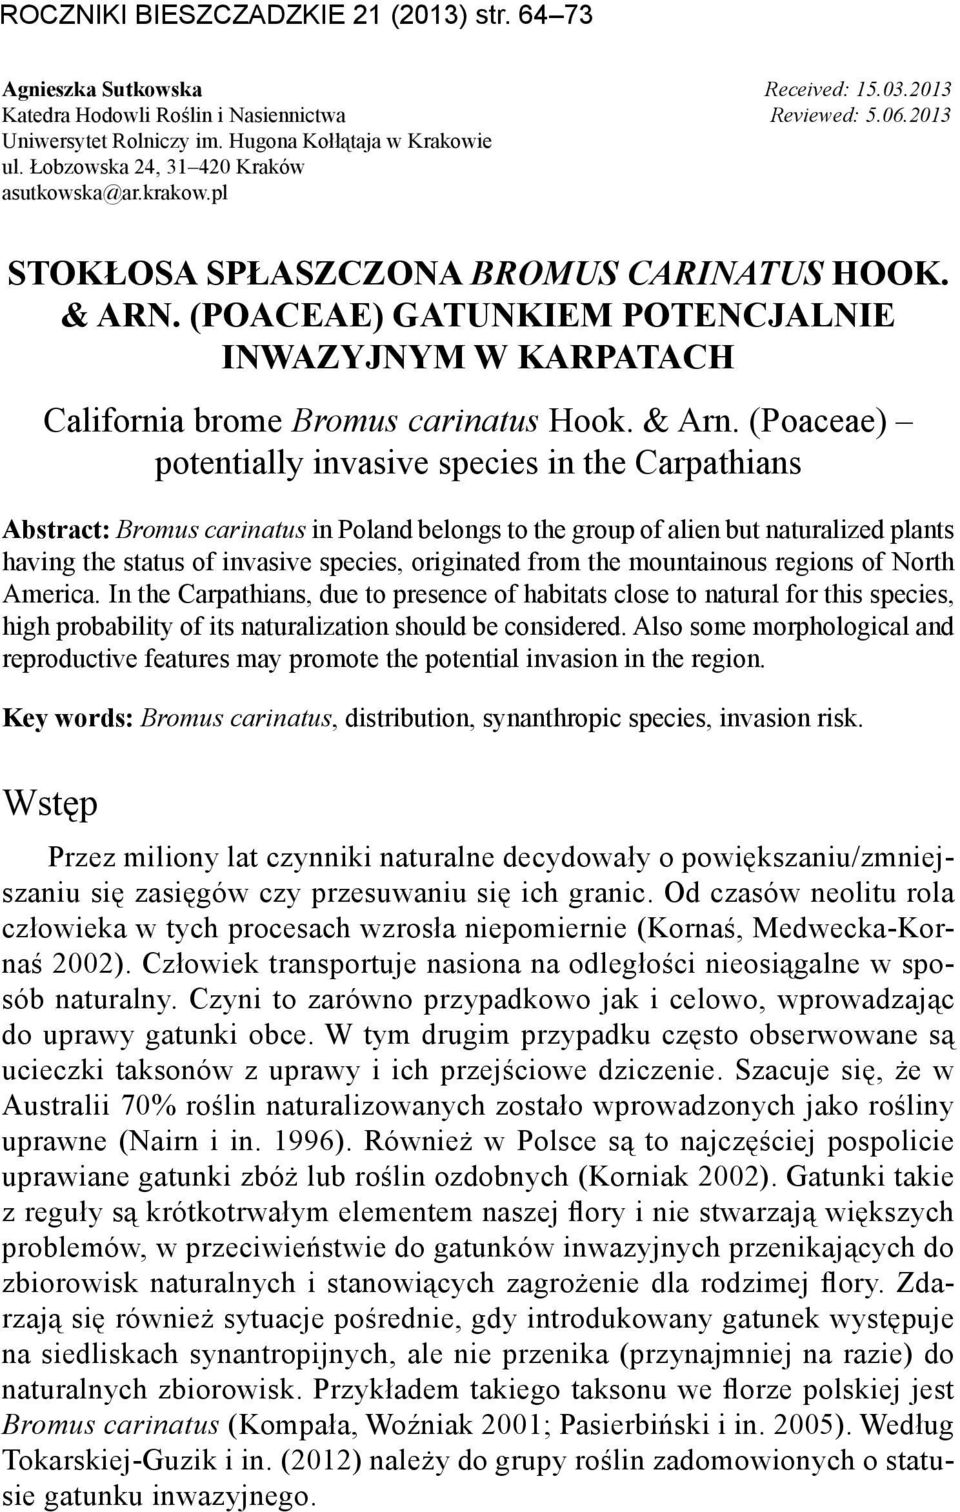 (Poaceae) gatunkiem potencjalnie inwazyjnym w Karpatach California brome Bromus carinatus Hook. & Arn.